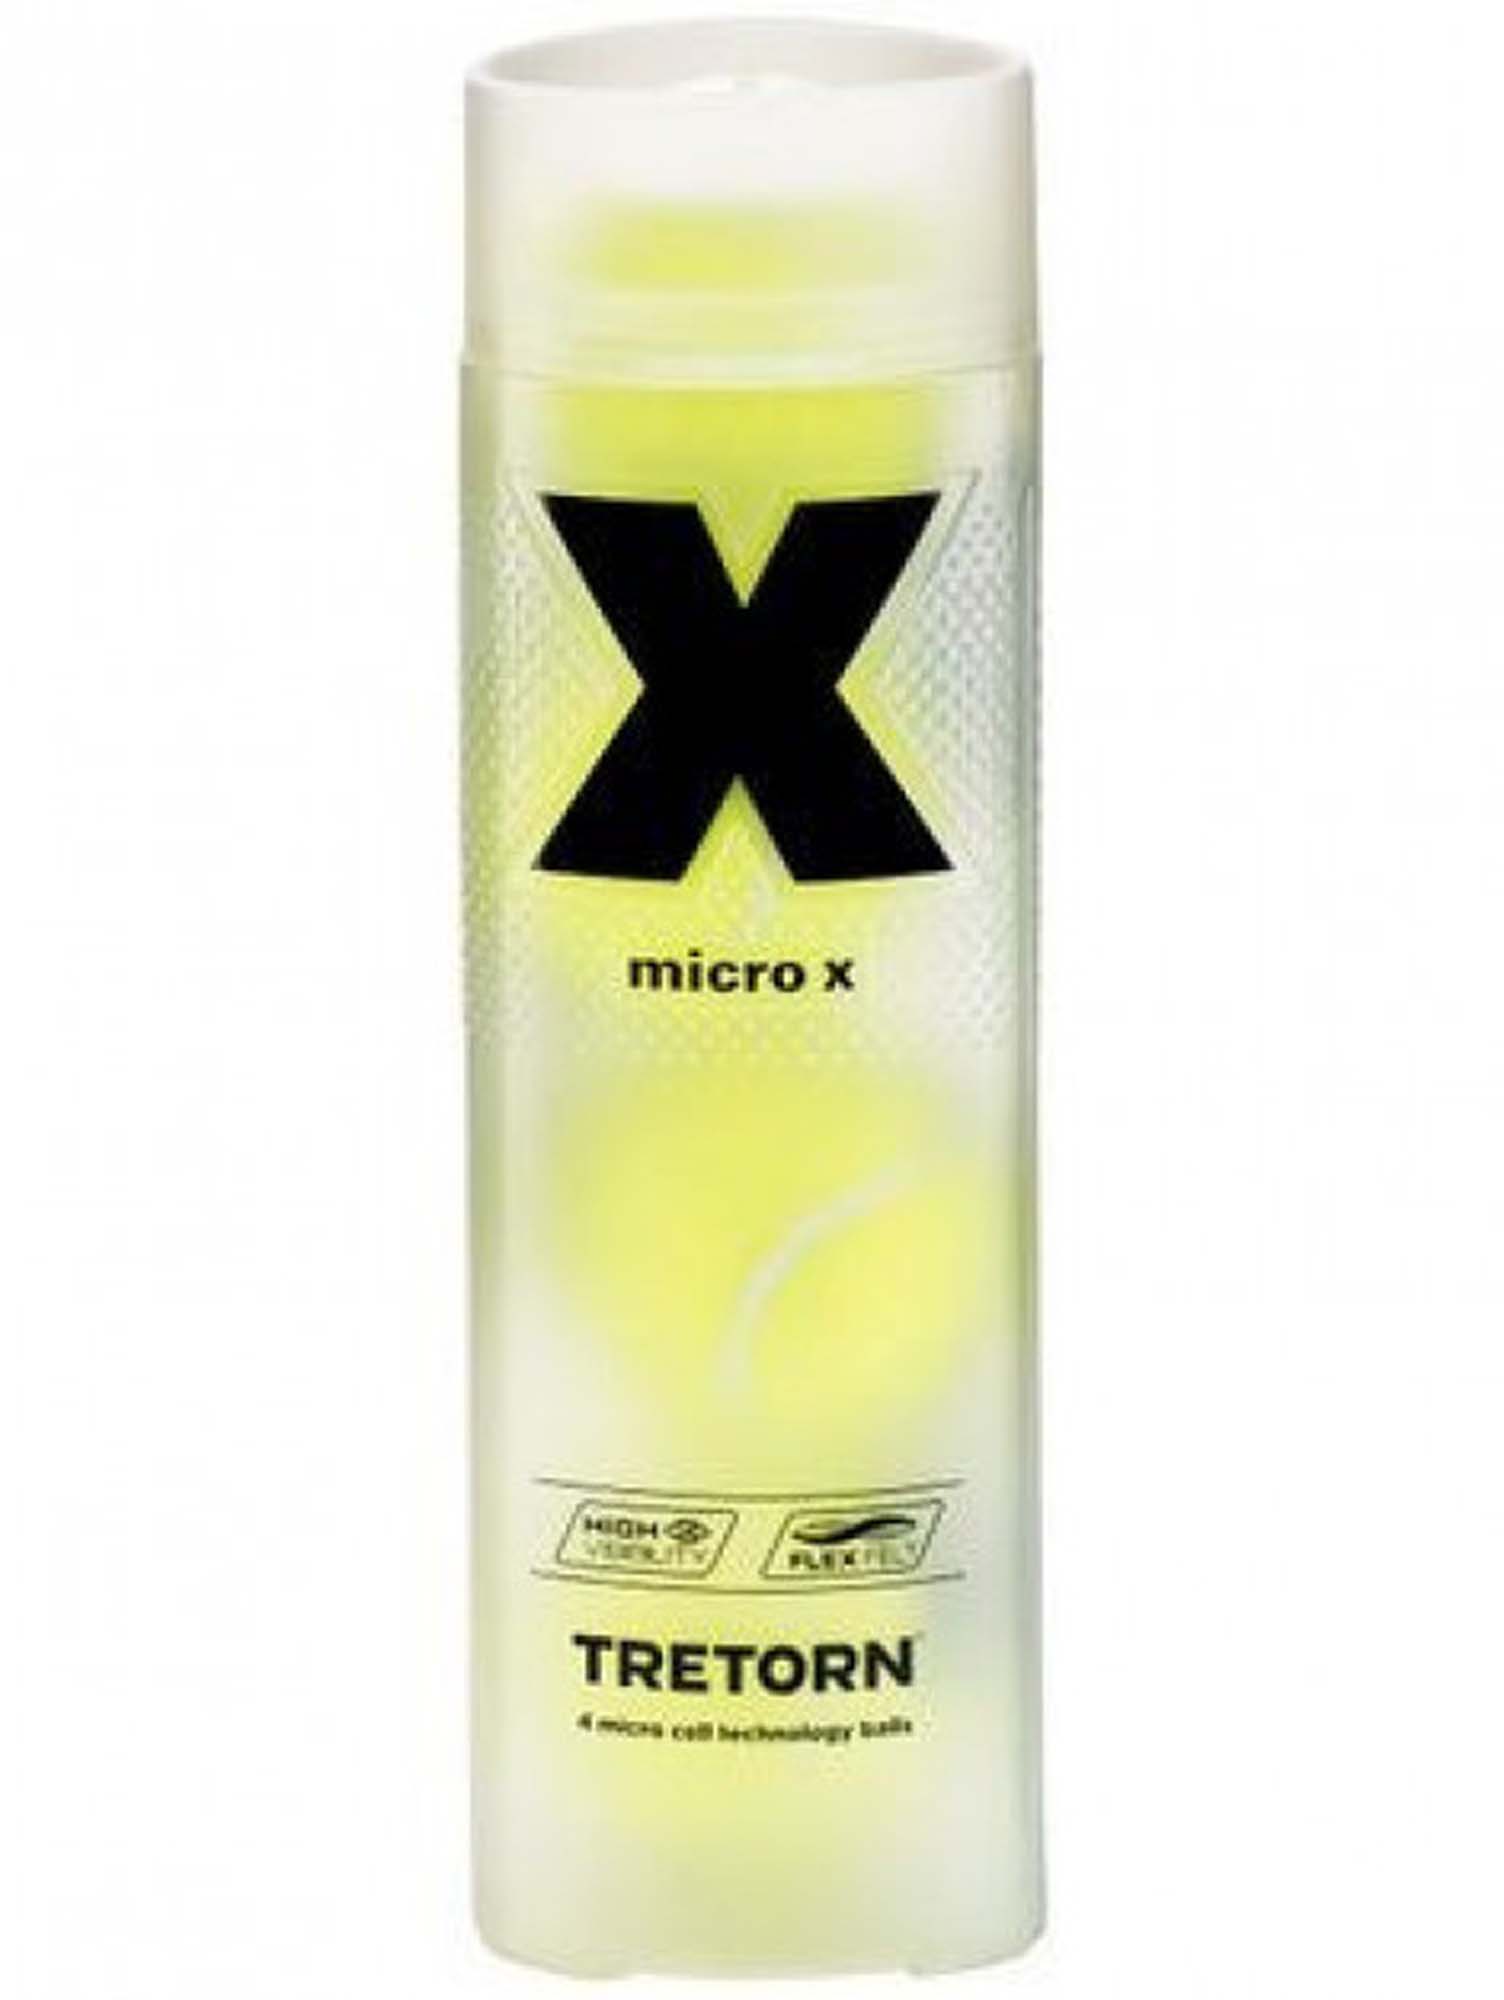 TRETORN Micro X